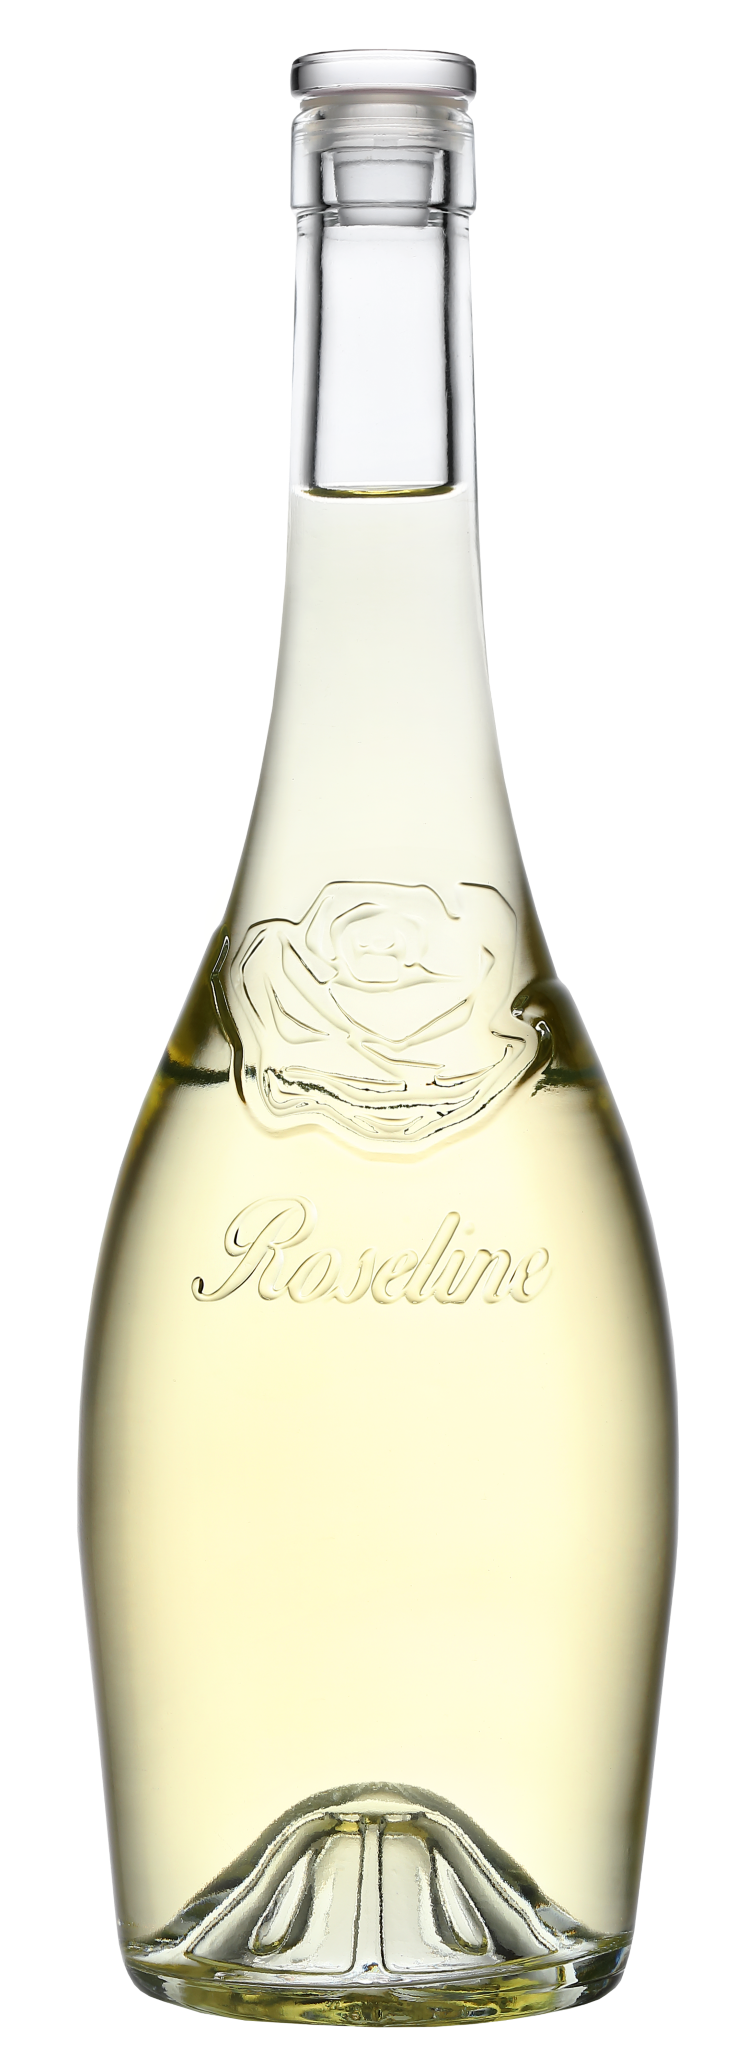 Roseline Prestige Côtes de Provence Blanc